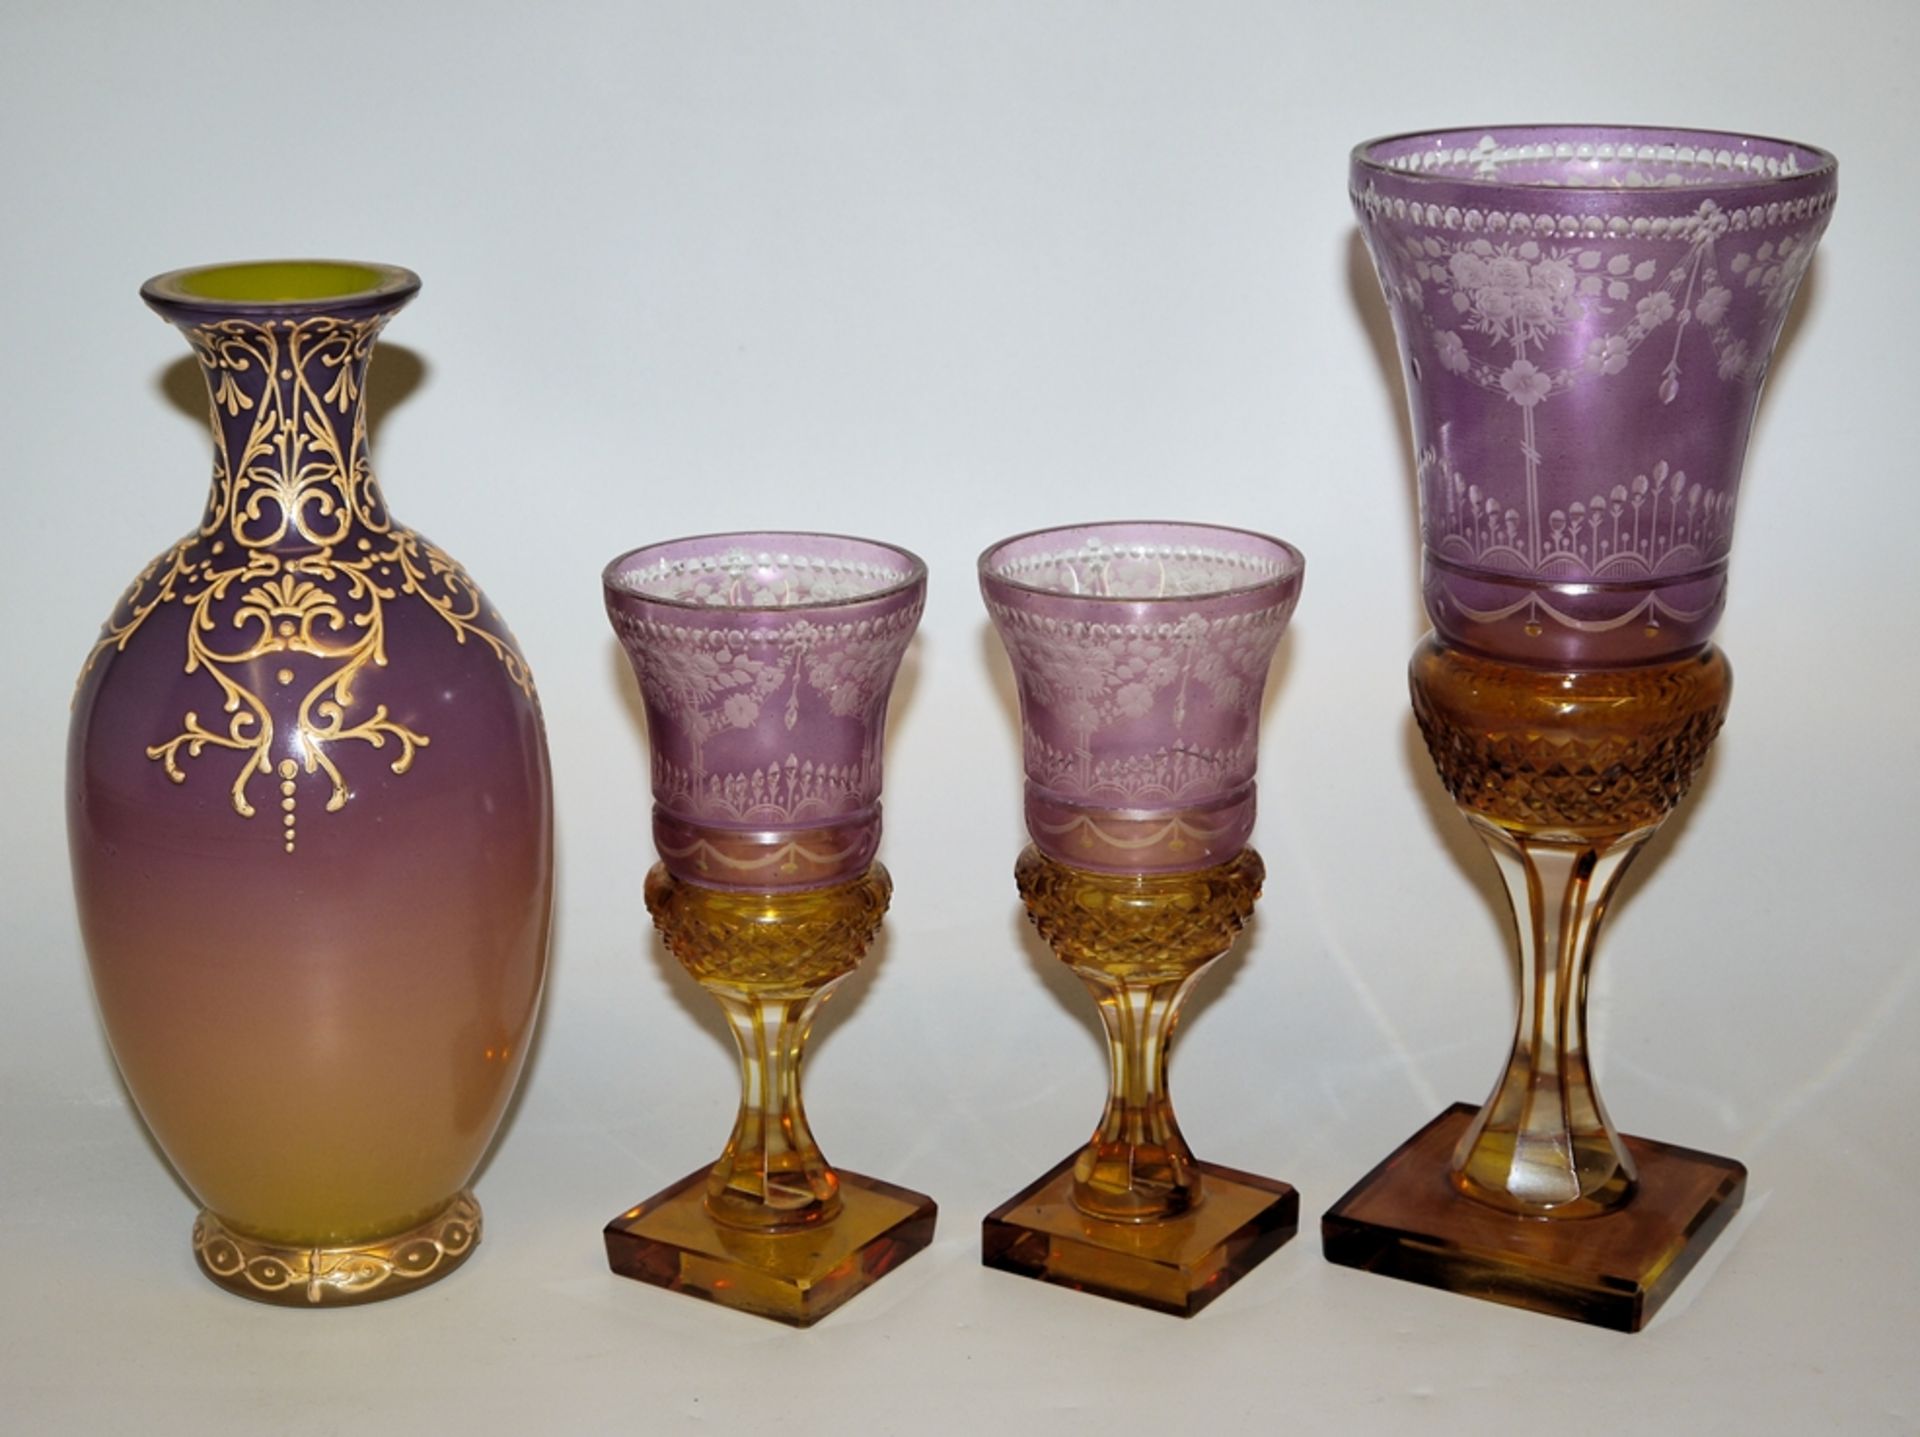 Pokal und zwei Weingläser im Biedermeierstil um 1900 & Vase, wohl Murano